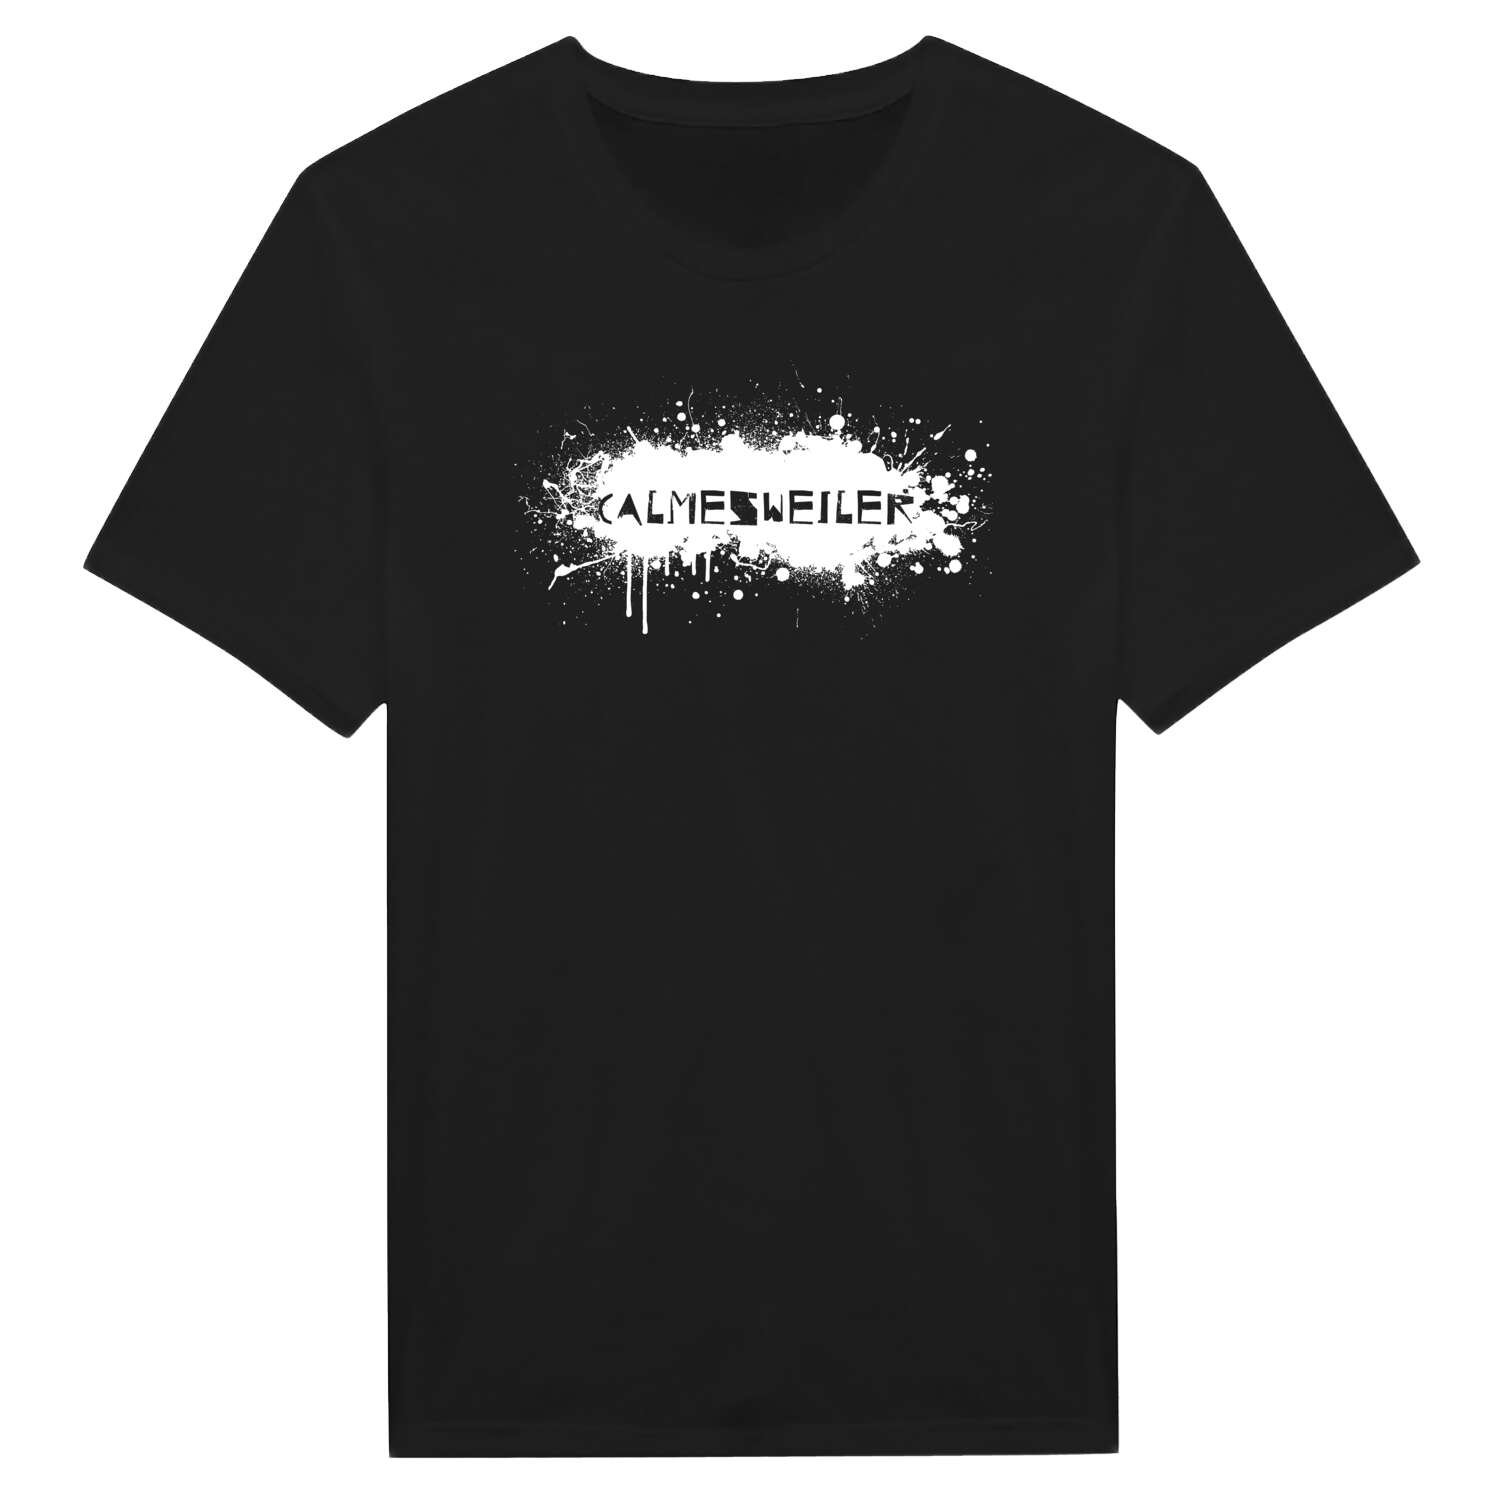 Calmesweiler T-Shirt »Paint Splash Punk«